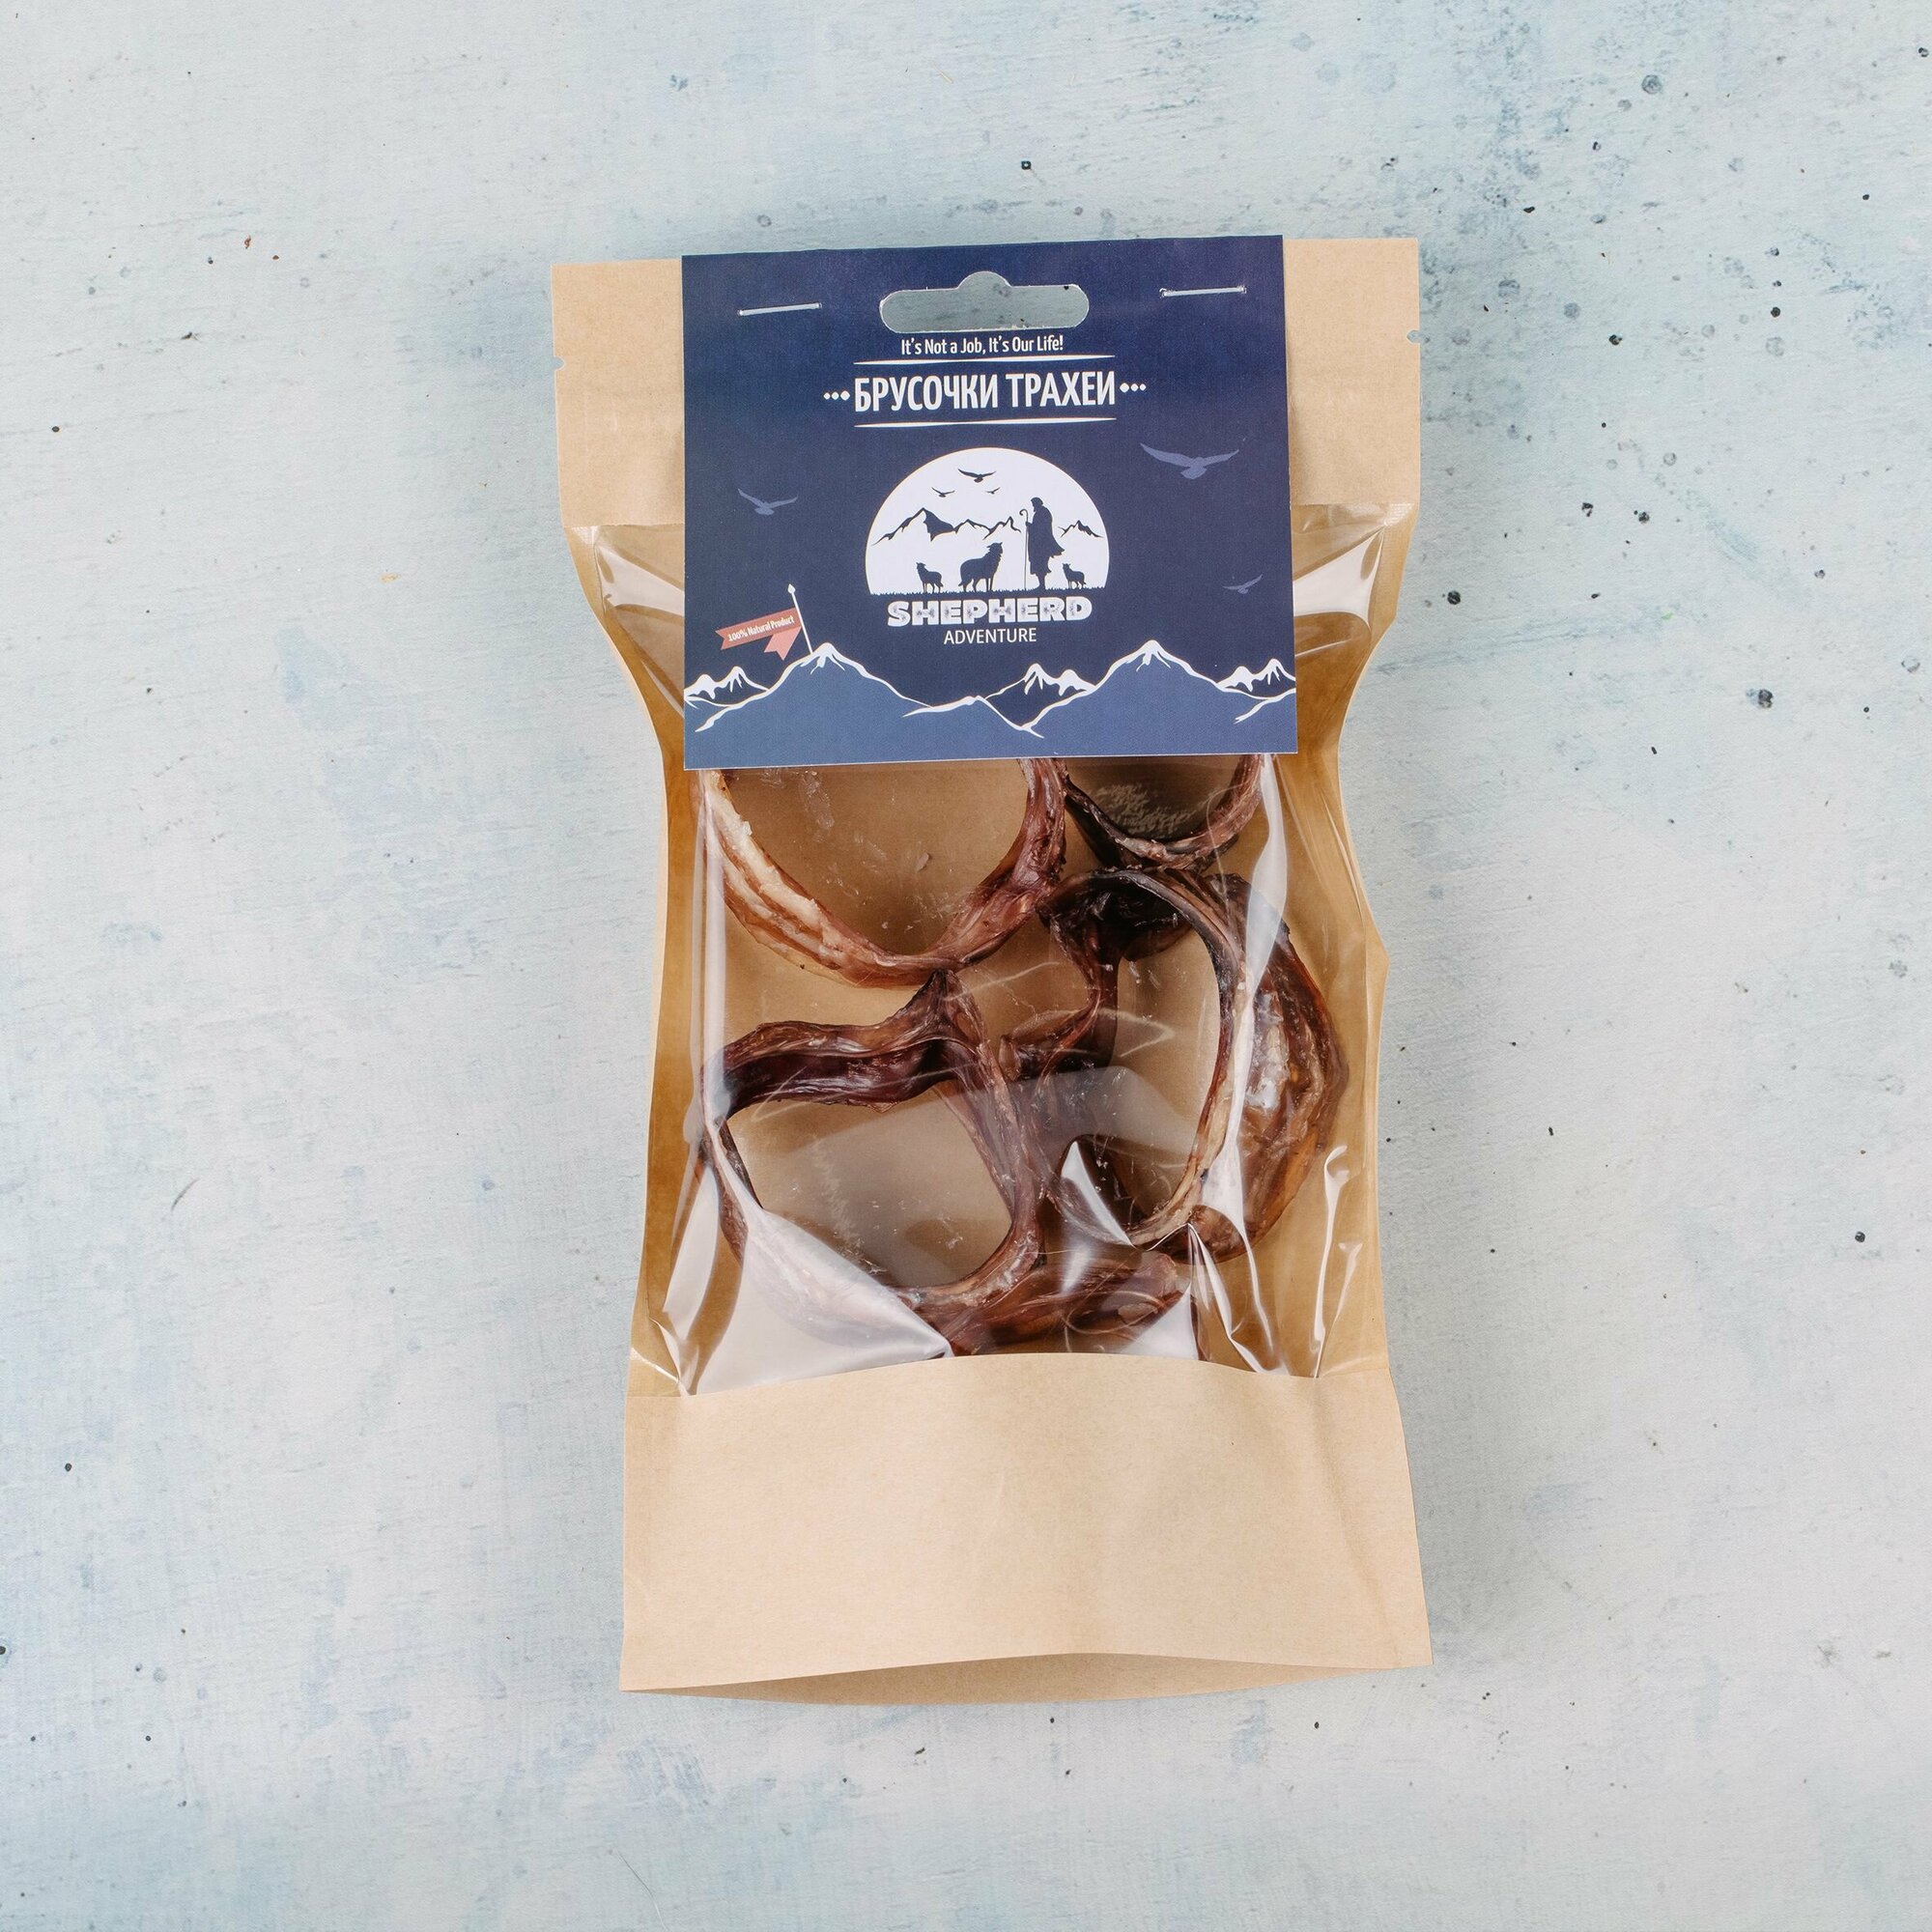 Брусочки трахеи говяжьи, натуральное сушёное лакомство для собак, 100 гр